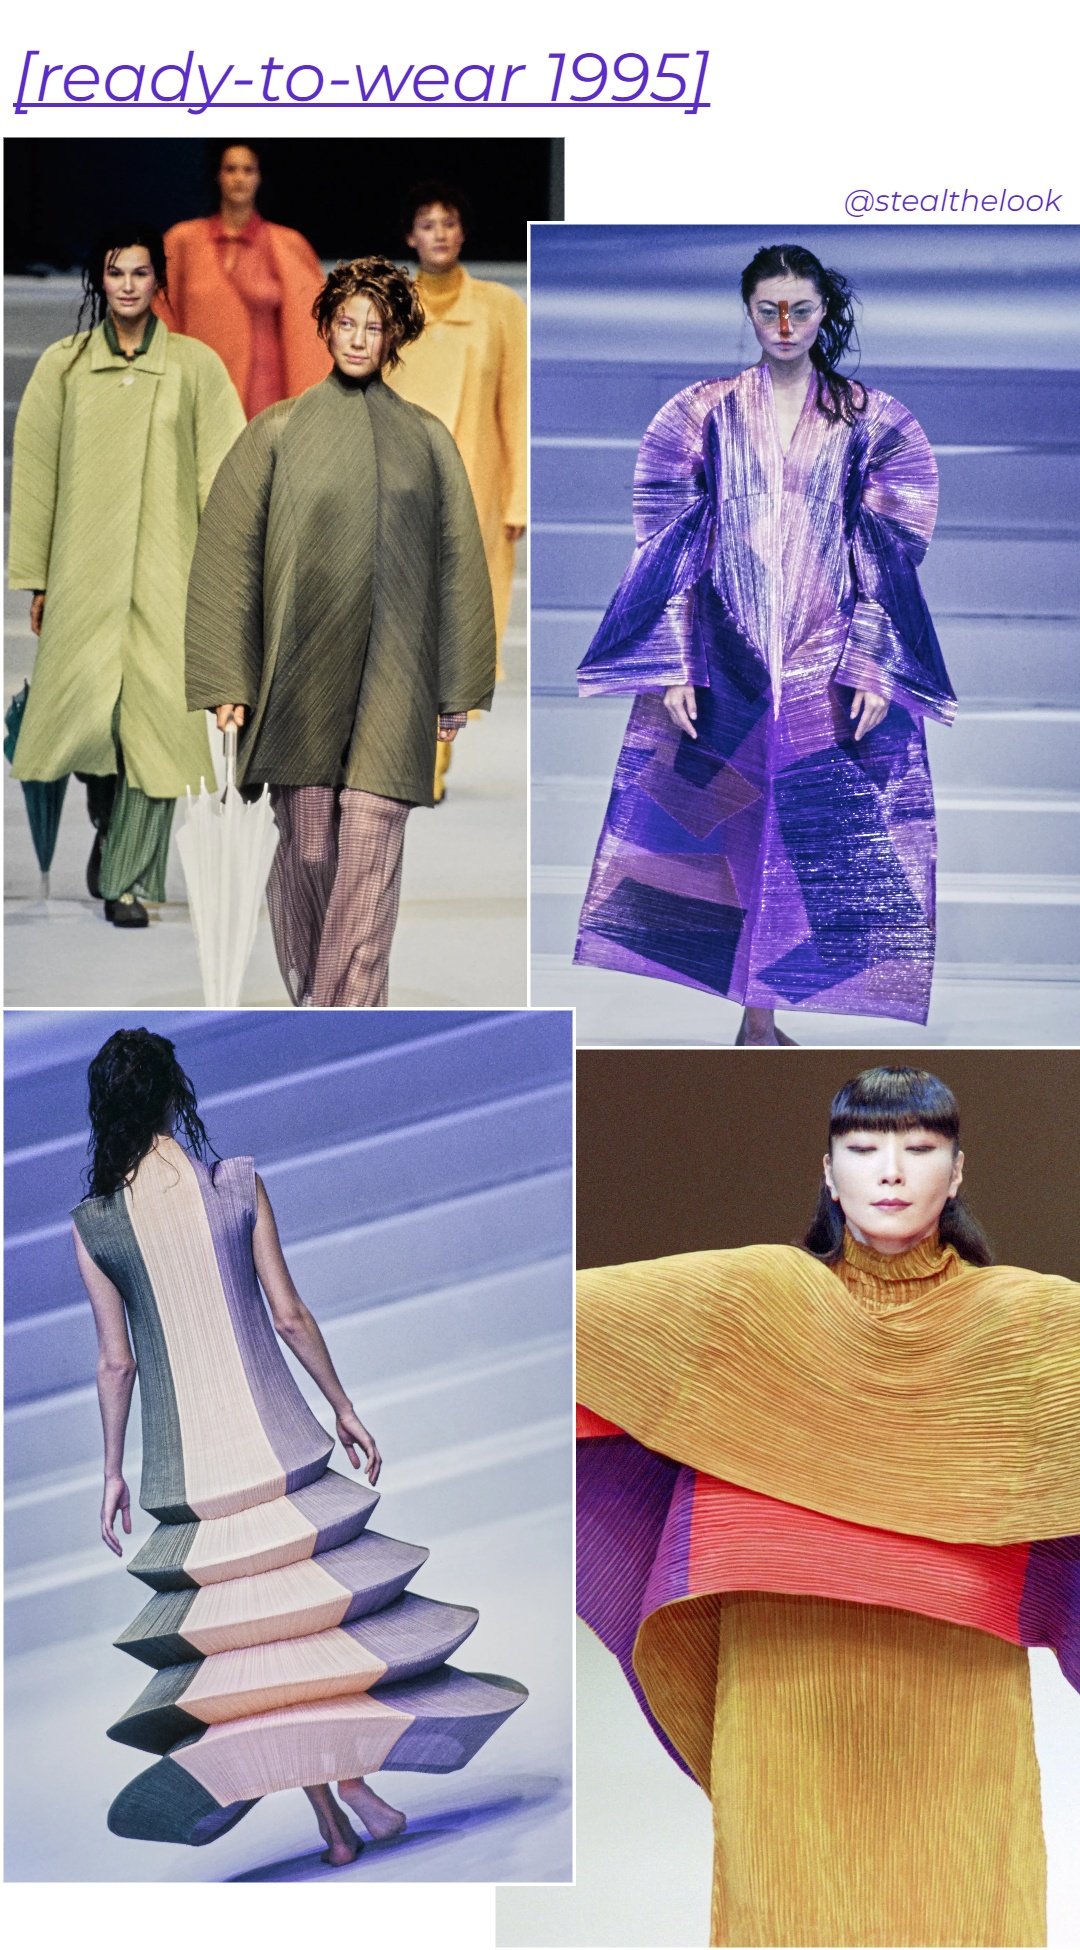 Desfile S/S 1995  - roupas diversas - asiáticos na moda - primavera - colagem de imagens - https://stealthelook.com.br